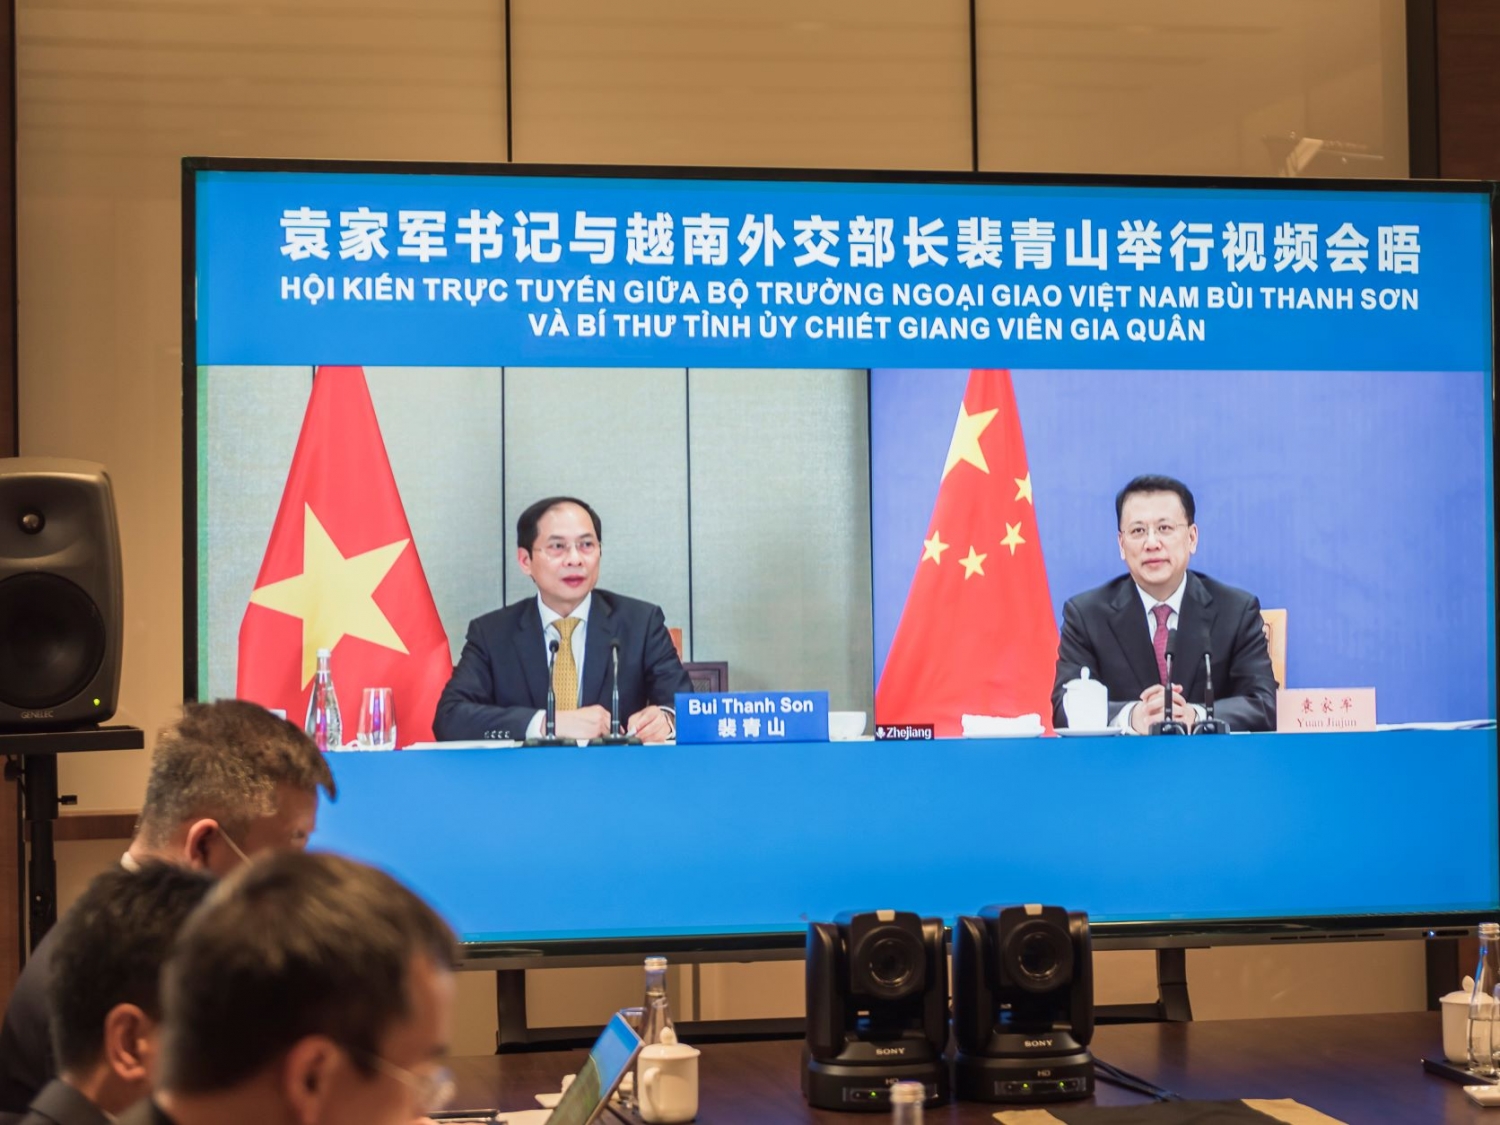 Bộ trưởng Bùi Thanh Sơn đề nghị củng cố và mở rộng quan hệ giao lưu hữu nghị giữa các địa phương Việt Nam với Chiết Giang